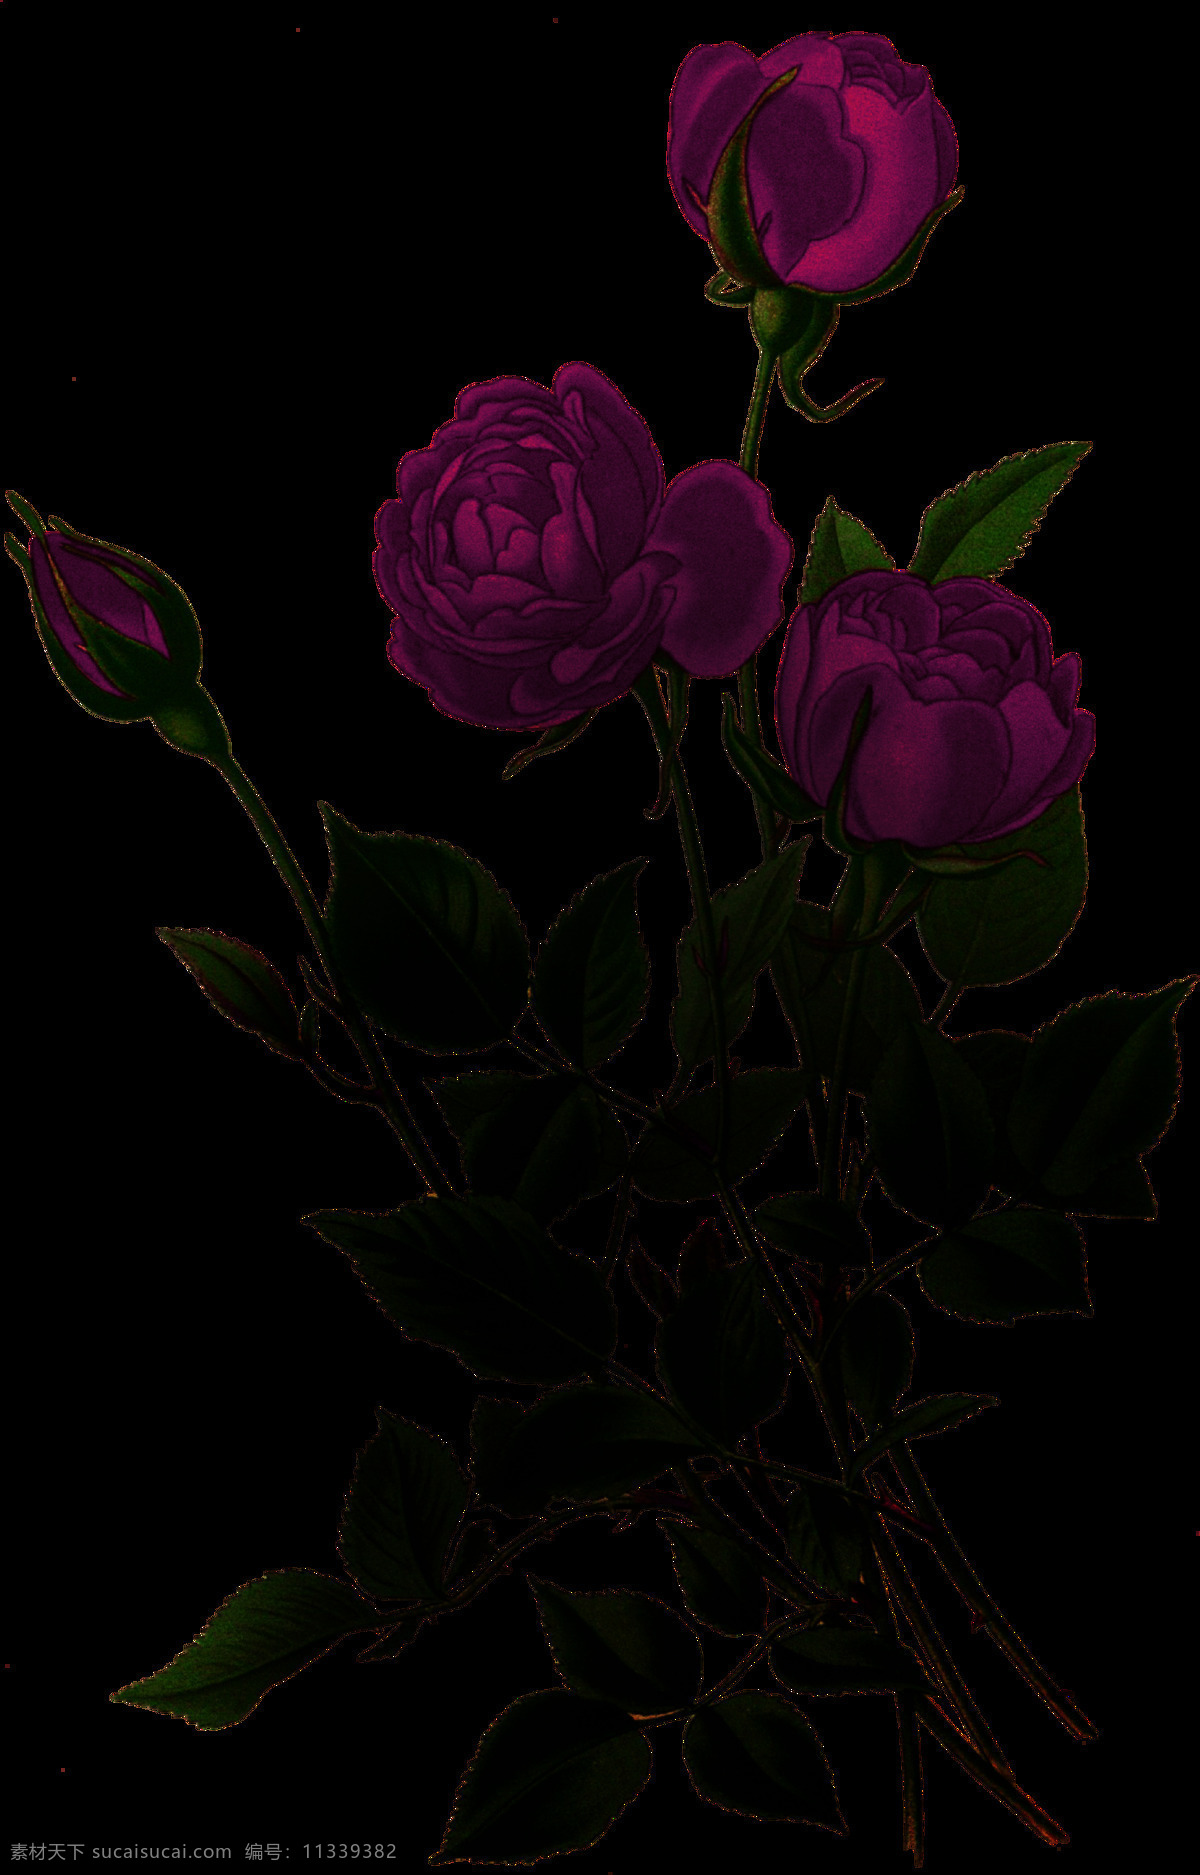 暗黑 风 植物 花朵 暗黑风 装饰图案 哥特 恐怖 吓人 万圣节 花纹